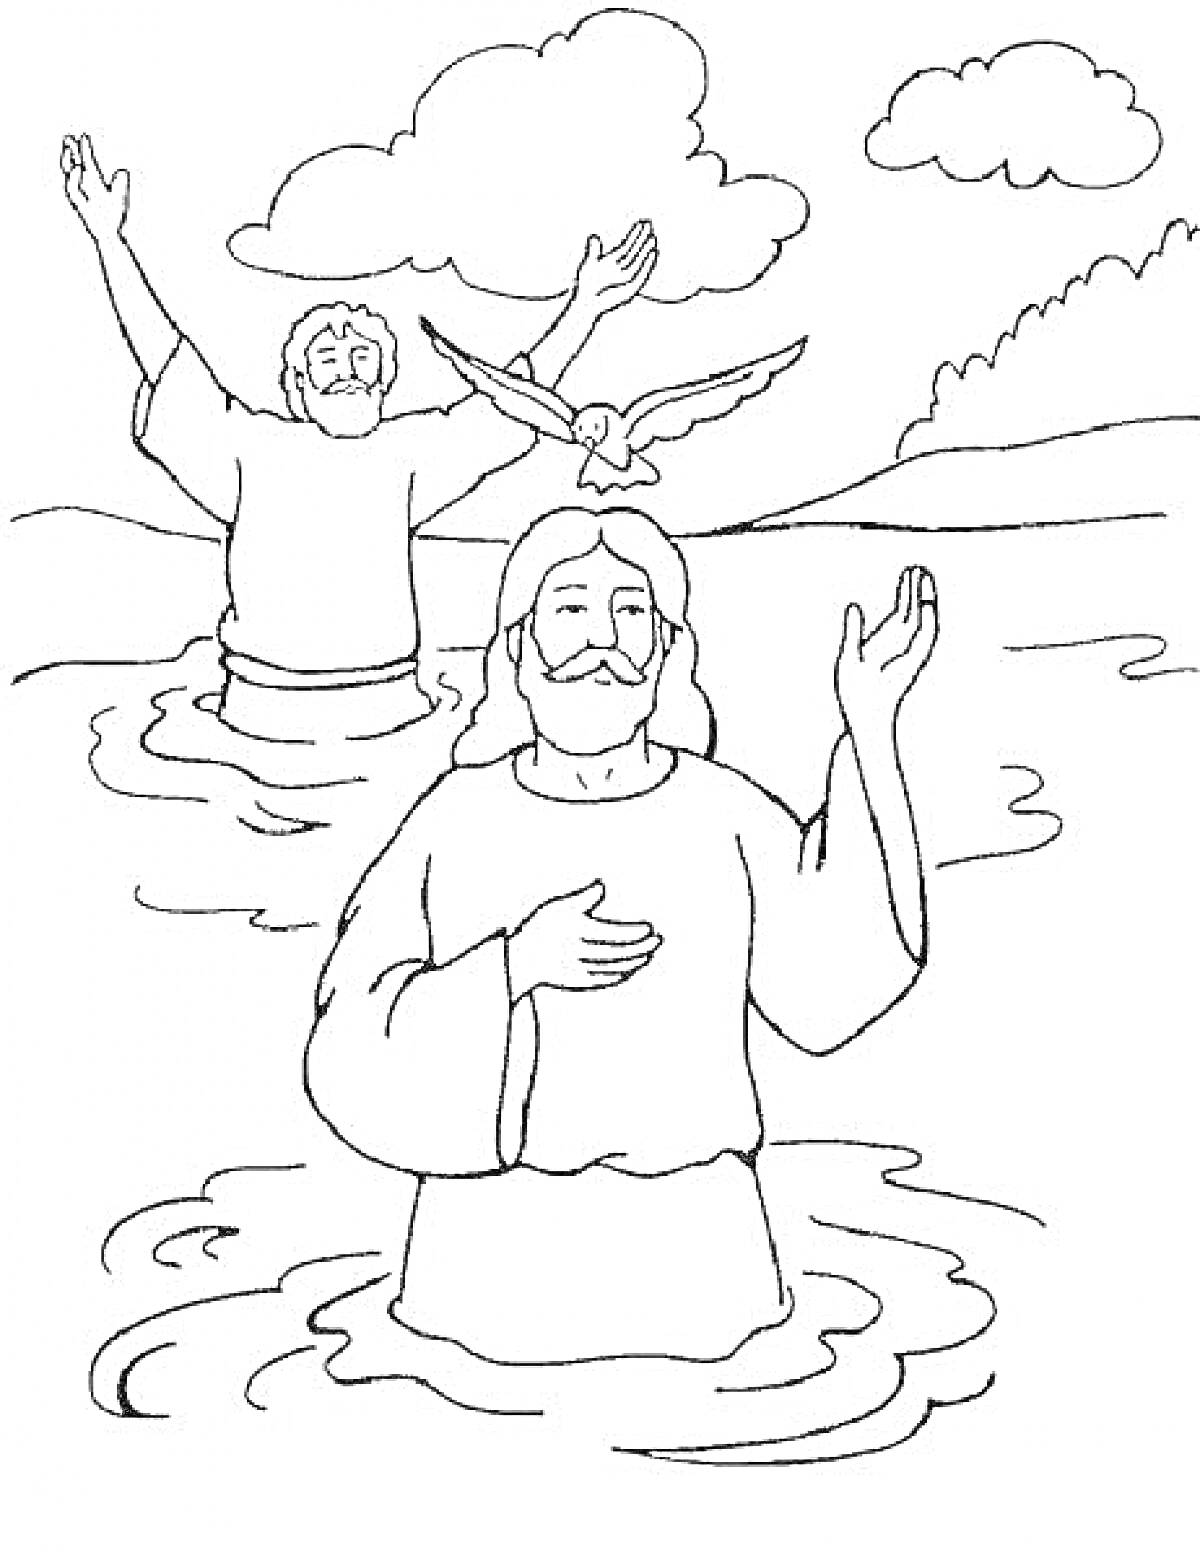 Крещение Господне, два человека в воде, голубь во время крещения, облака, деревья на заднем плане